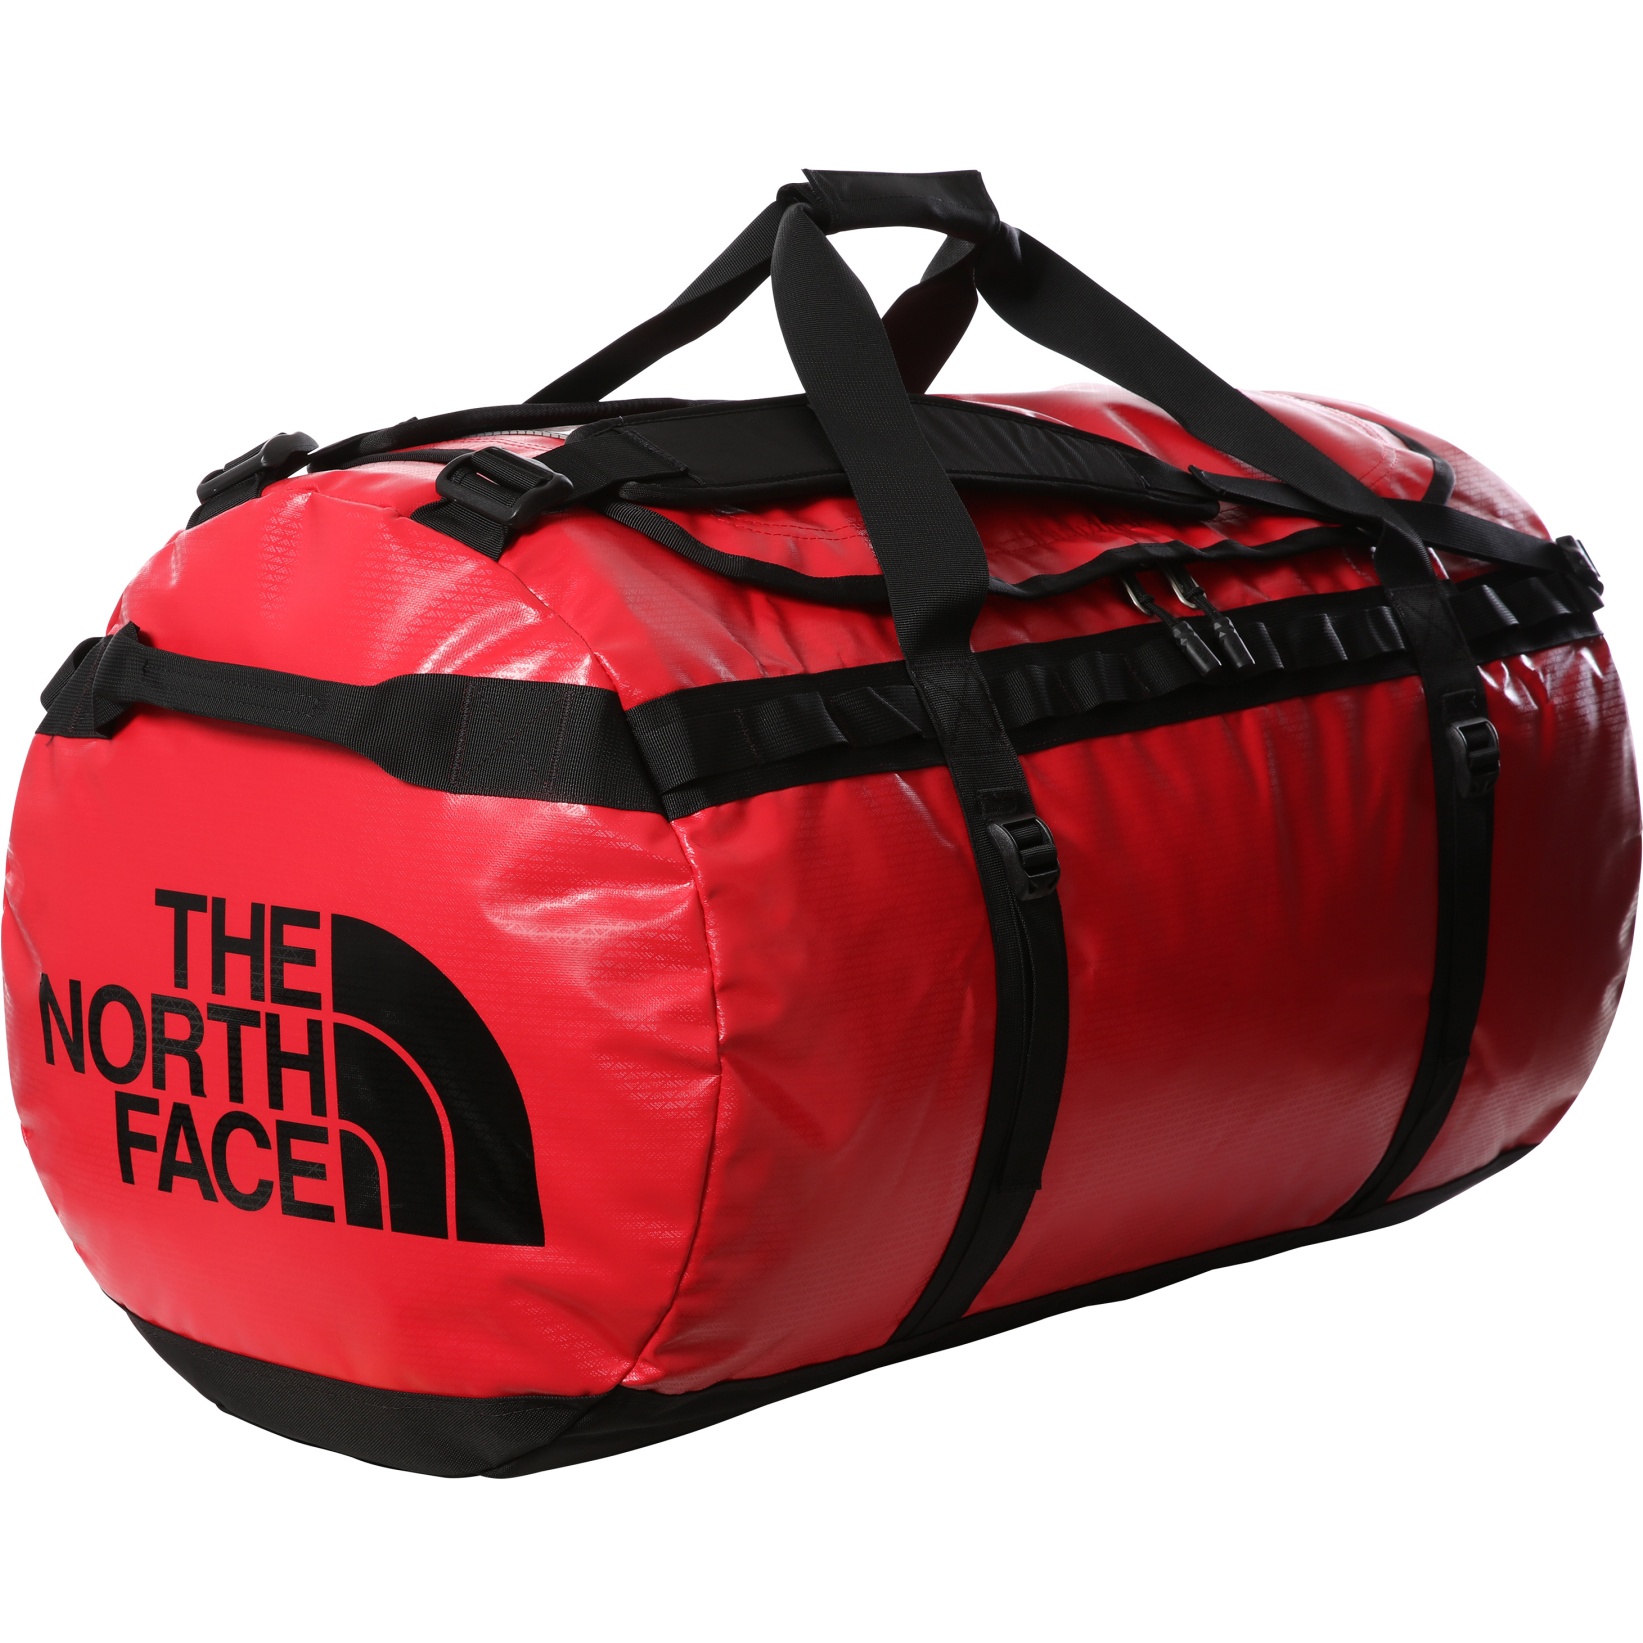 Produktbild von The North Face Base Camp Duffel Reisetasche - XL - TNF Red/TNF Black